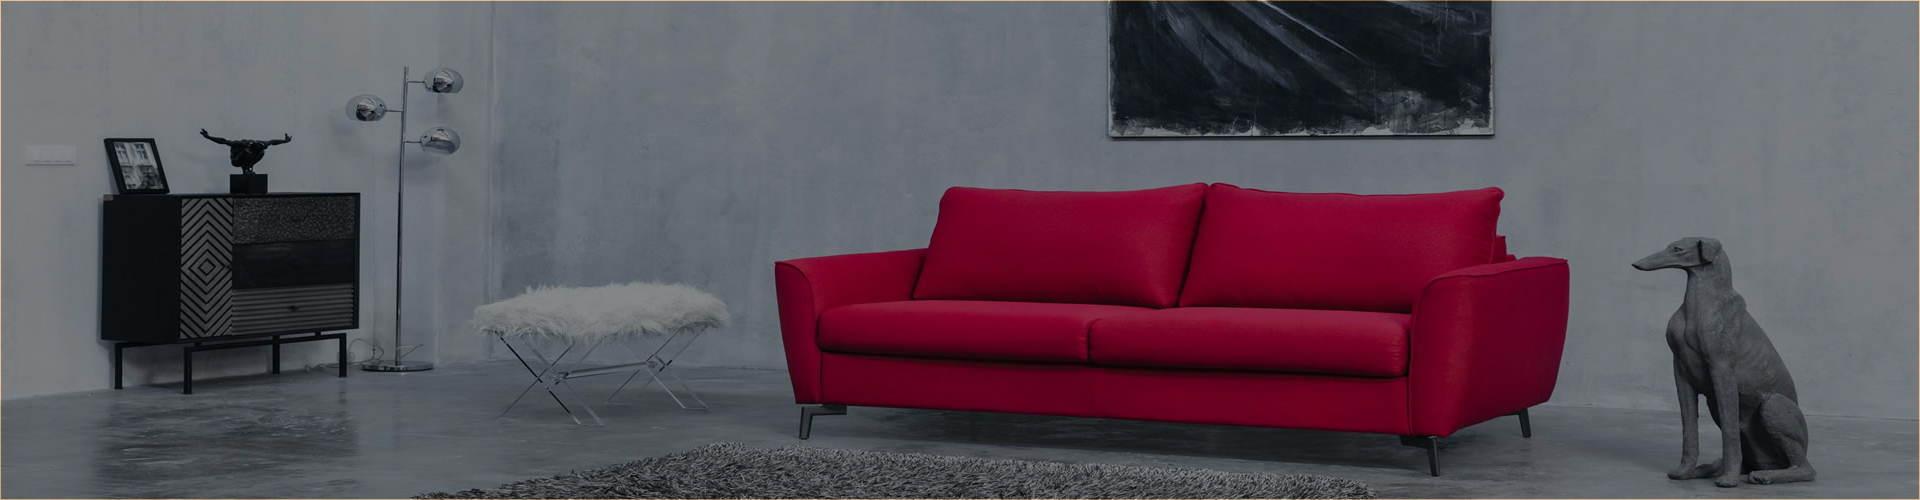 Crvena kožna sofa u modernom sivo-crnom ambijentu